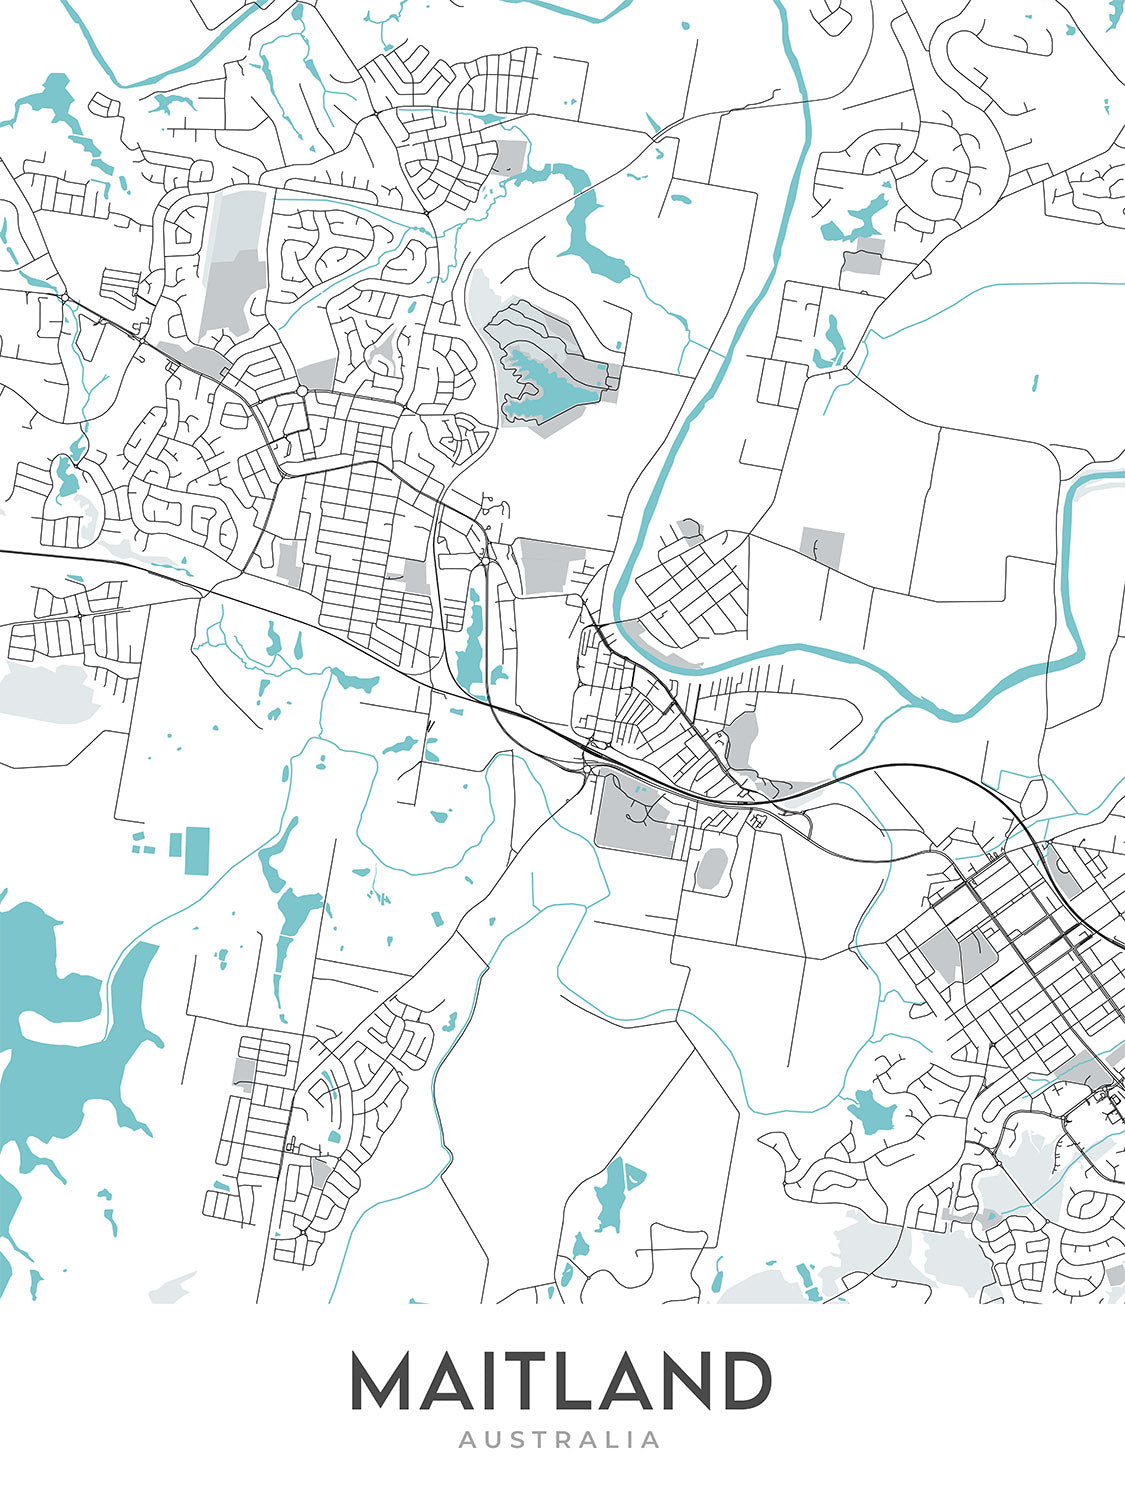 Plan de la ville moderne de Maitland, Nouvelle-Galles du Sud : prison de Maitland, musée de Maitland, hôtel de ville de Maitland, New England Hwy, Pacific Hwy